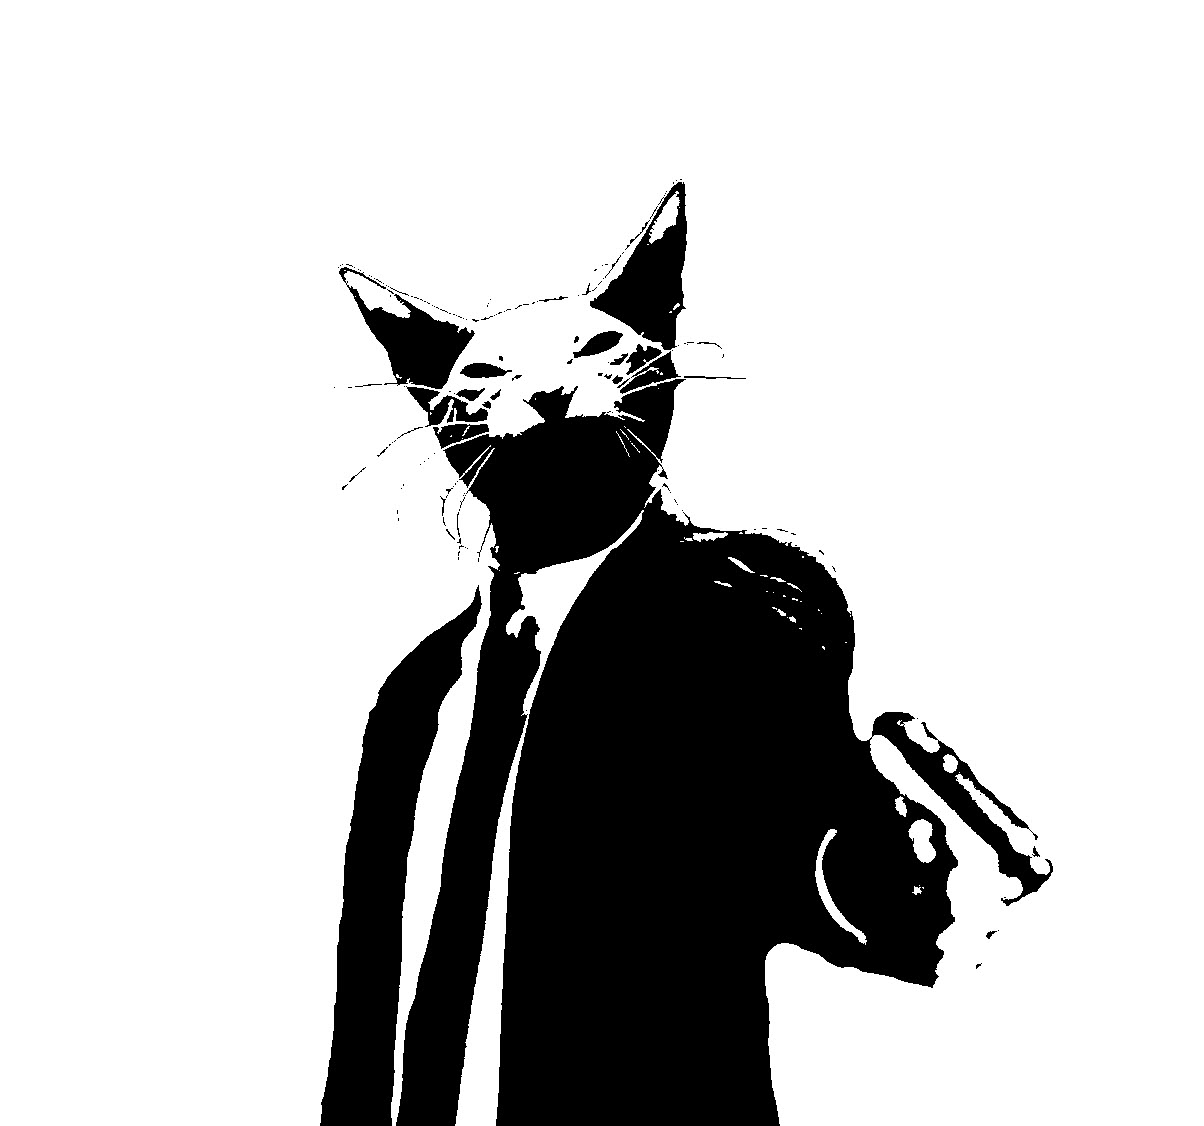 Hình ảnh con mèo dễ thương cầm súng